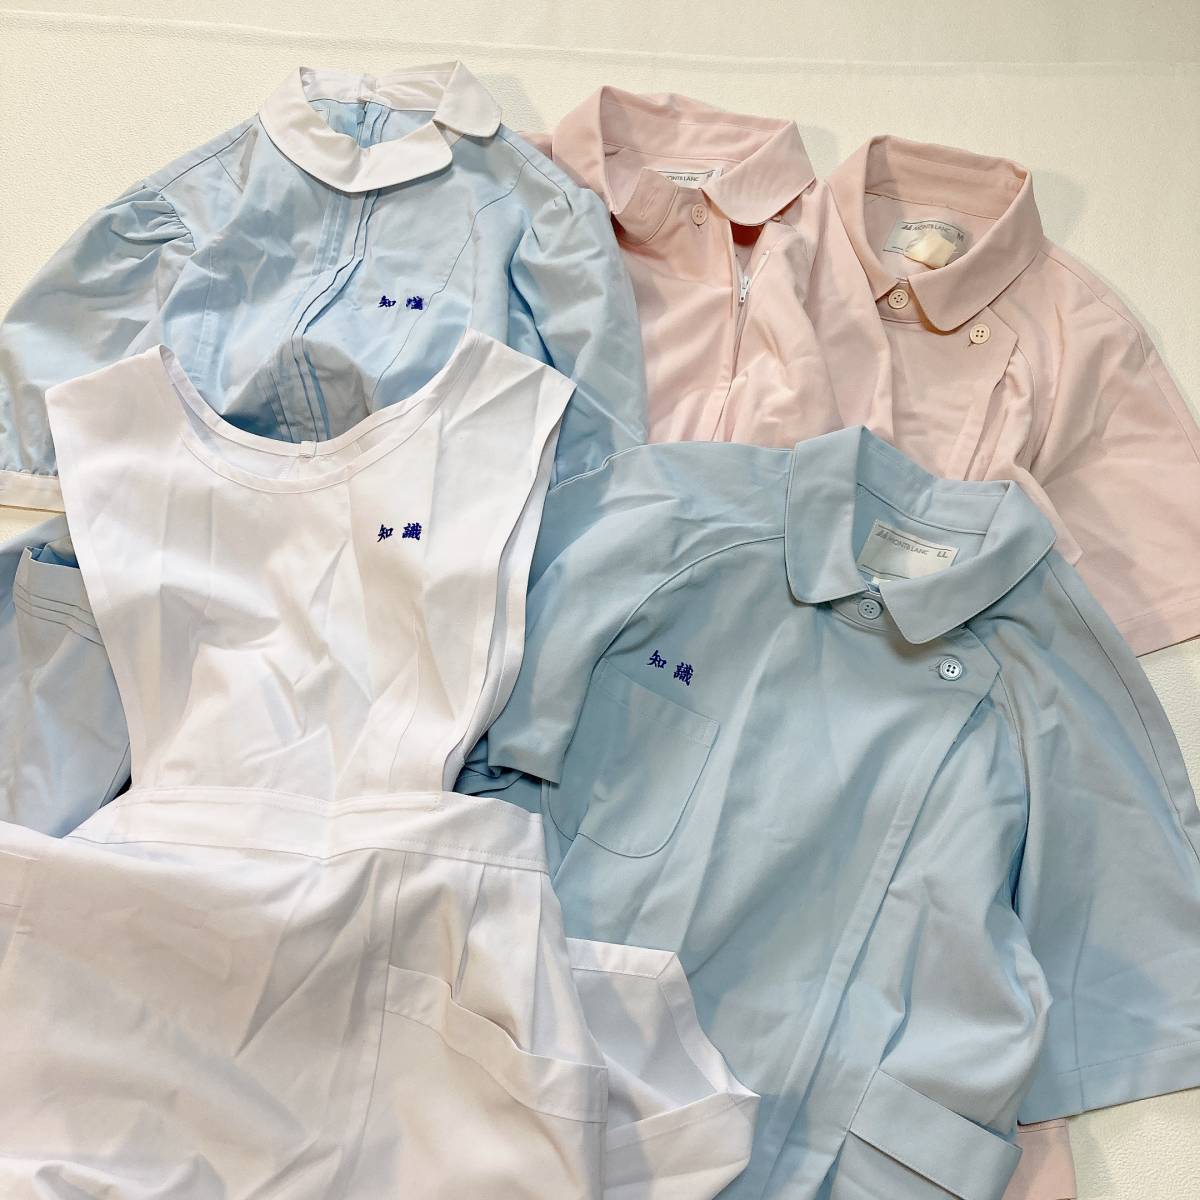 N5 ナース服 まとめ 5点セット ワンピース 上着 水色 白 ピンク 看護師 コスプレ ナース 制服 M L LLの画像1